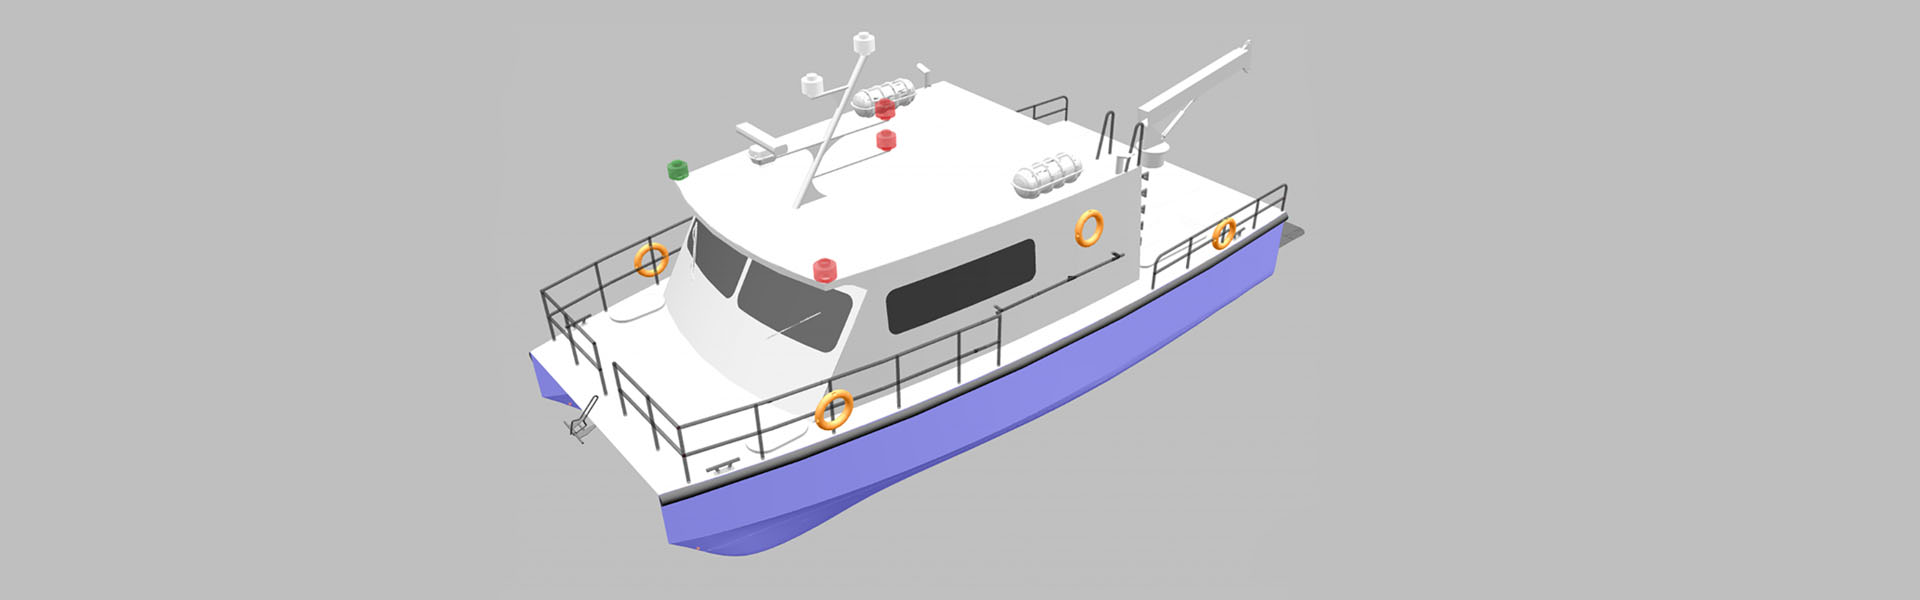 3D model of a dive support vessel - 13 m Catamaran.